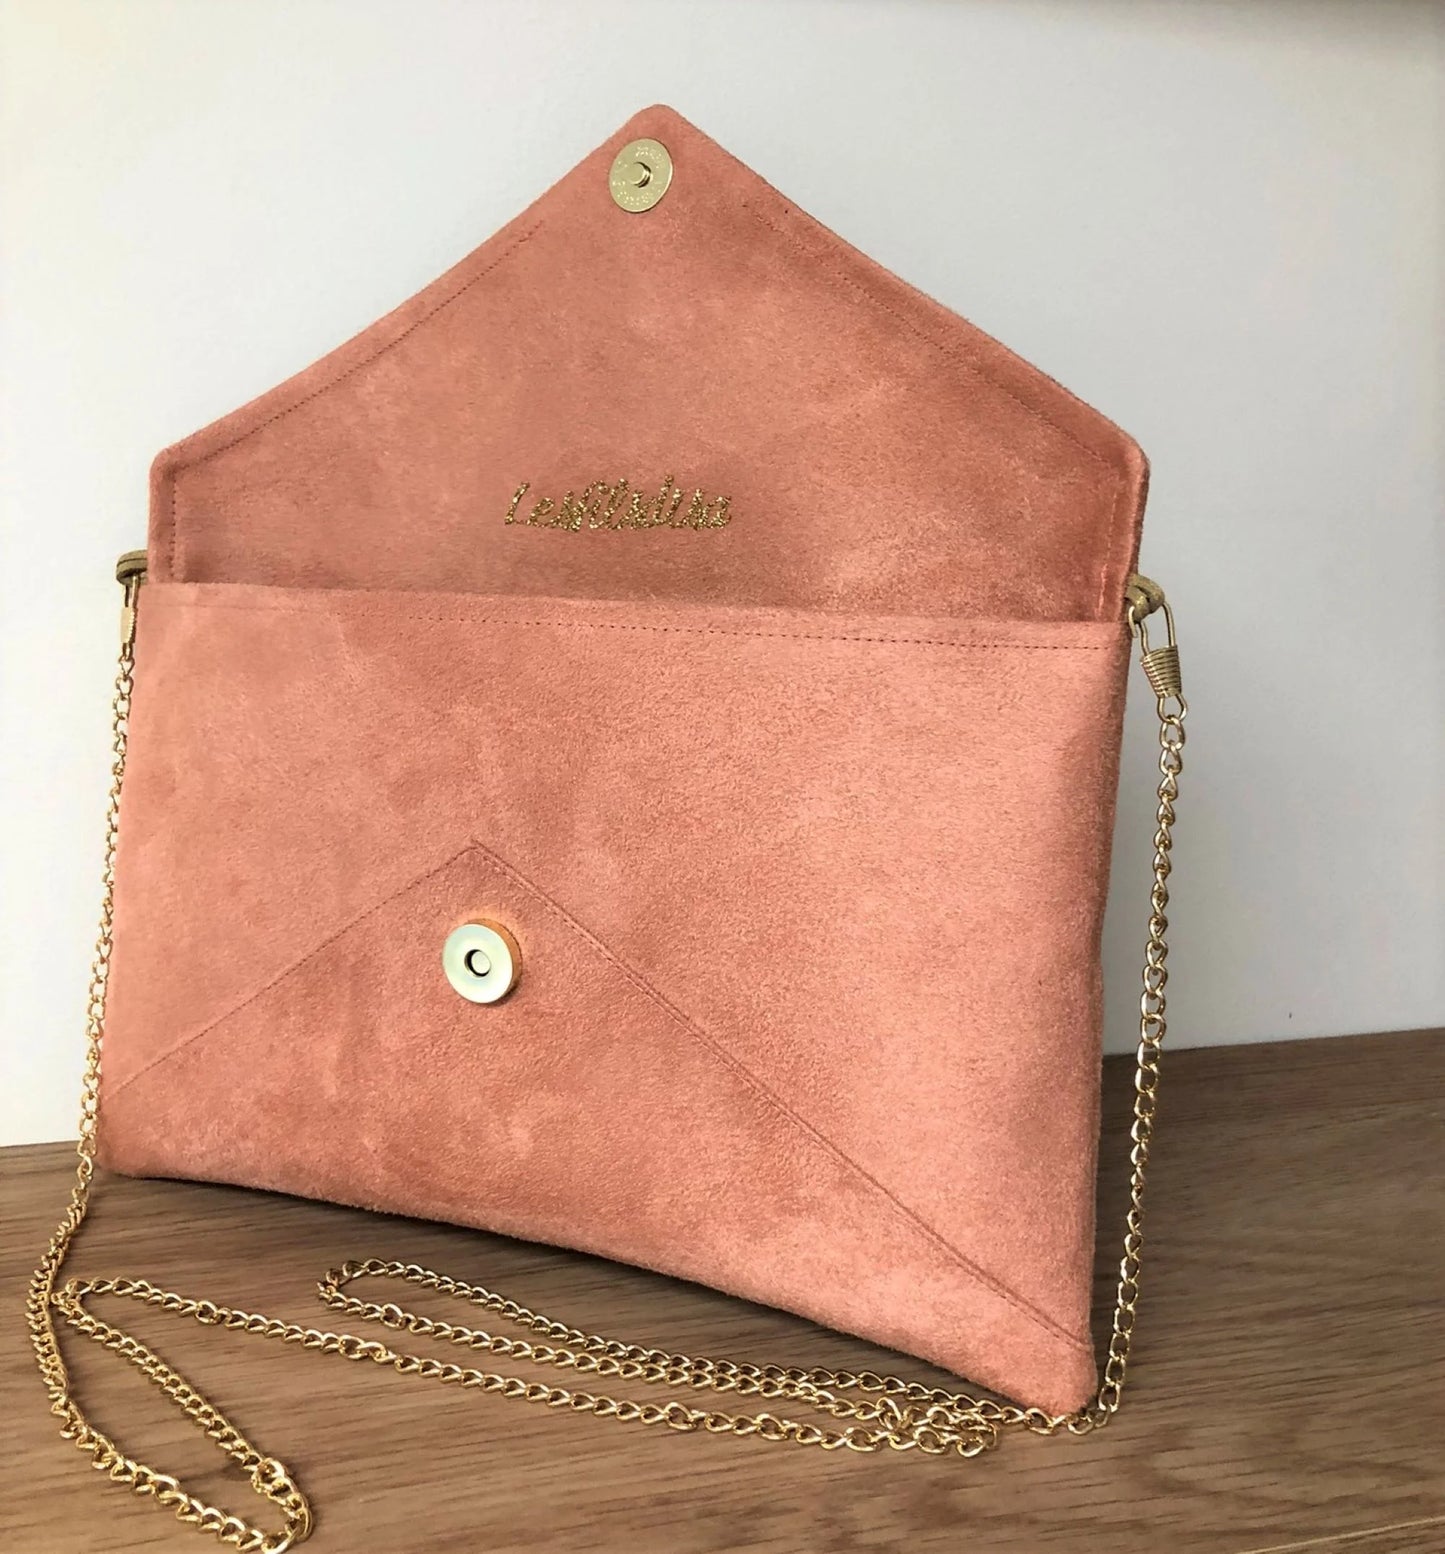 Le sac pochette Isa rose saumon à paillettes dorées, avec chainette amovible, ouvert.